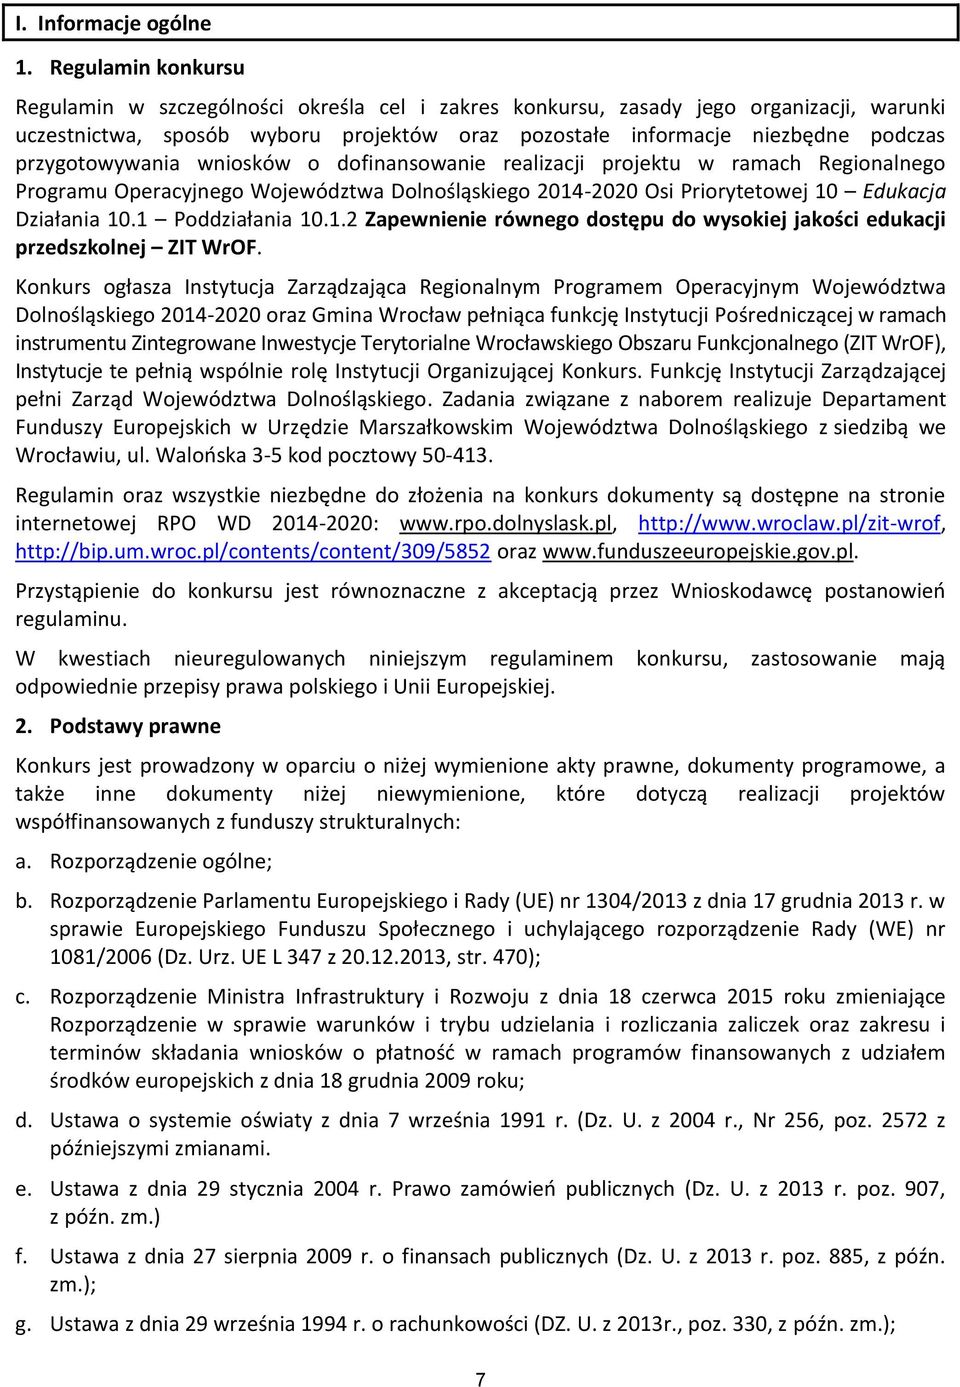 przygotowywania wniosków o dofinansowanie realizacji projektu w ramach Regionalnego Programu Operacyjnego Województwa Dolnośląskiego 2014-2020 Osi Priorytetowej 10 Edukacja Działania 10.